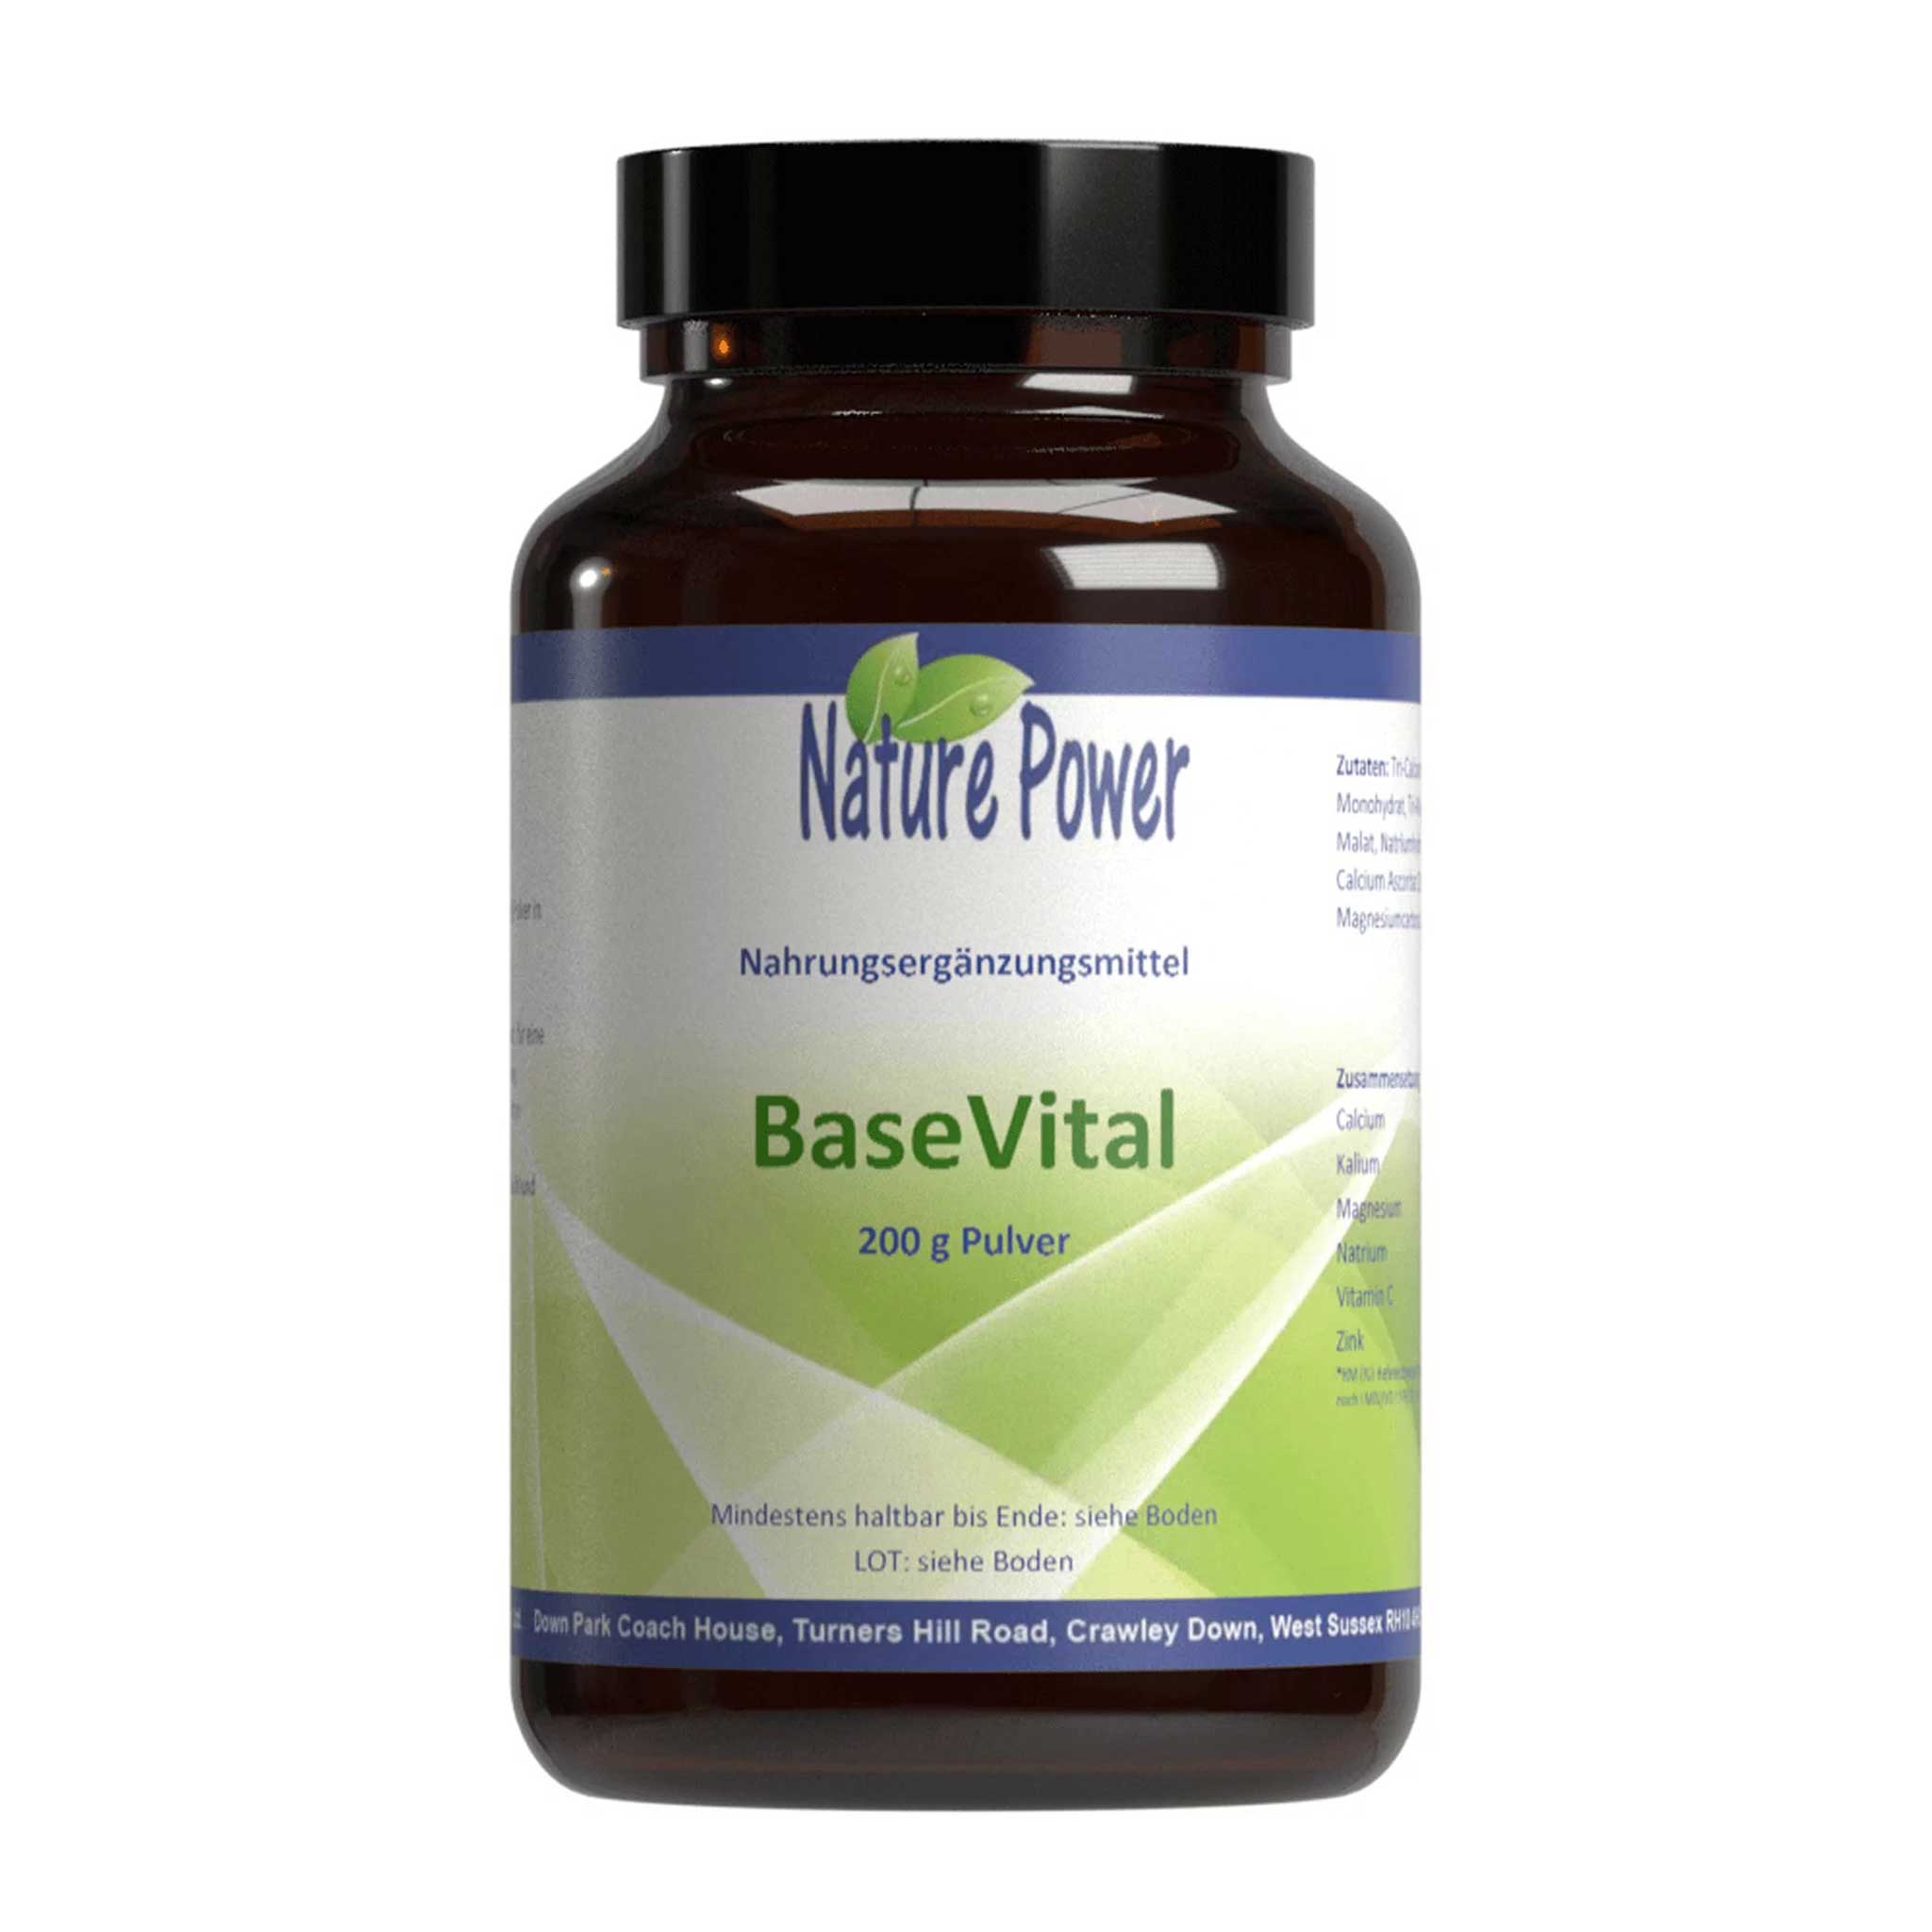 BaseVital, 200 g powder